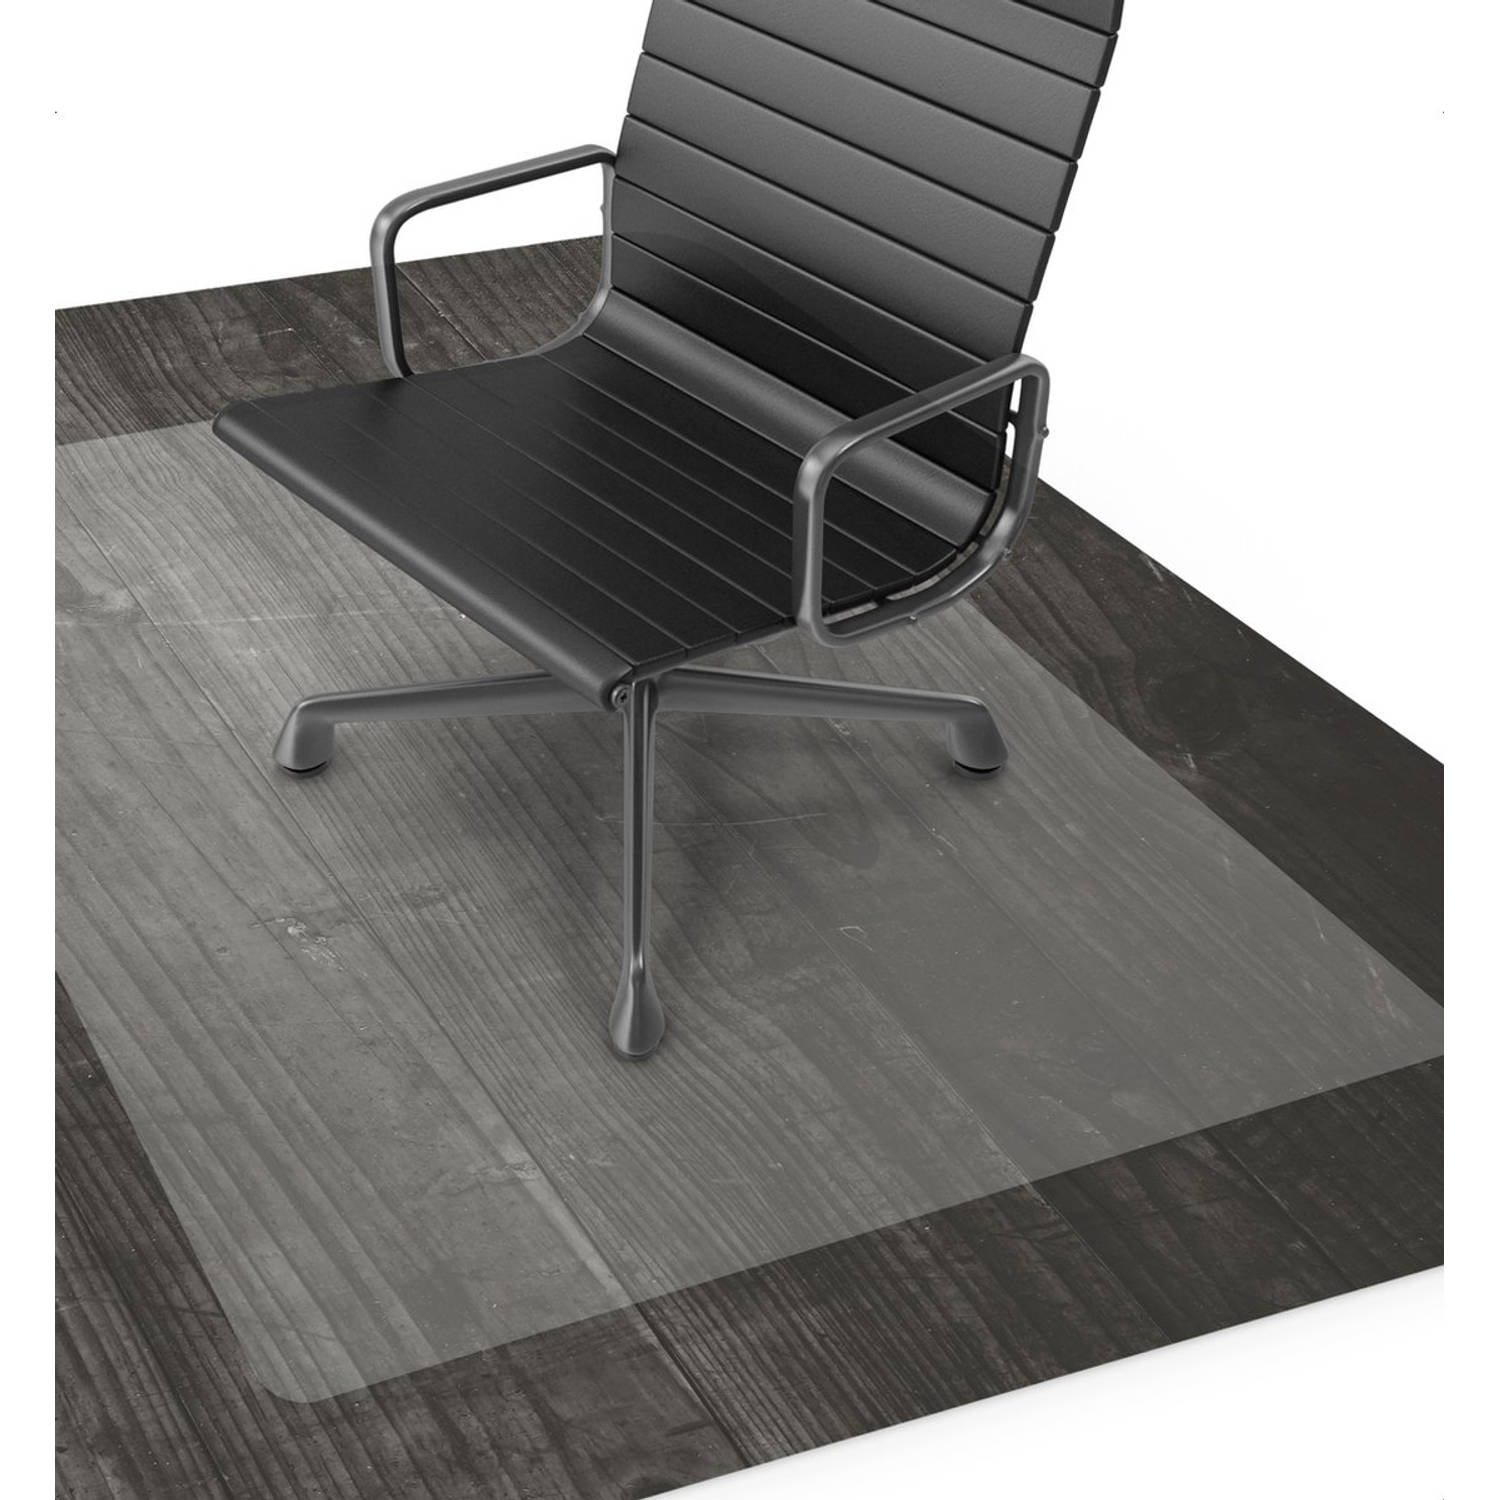 Goliving Vloerbeschermer bureaustoel - 90x120cm - Bureaustoelmat - PVC - Transparant - Geluiddempend - Voor harde vloeren